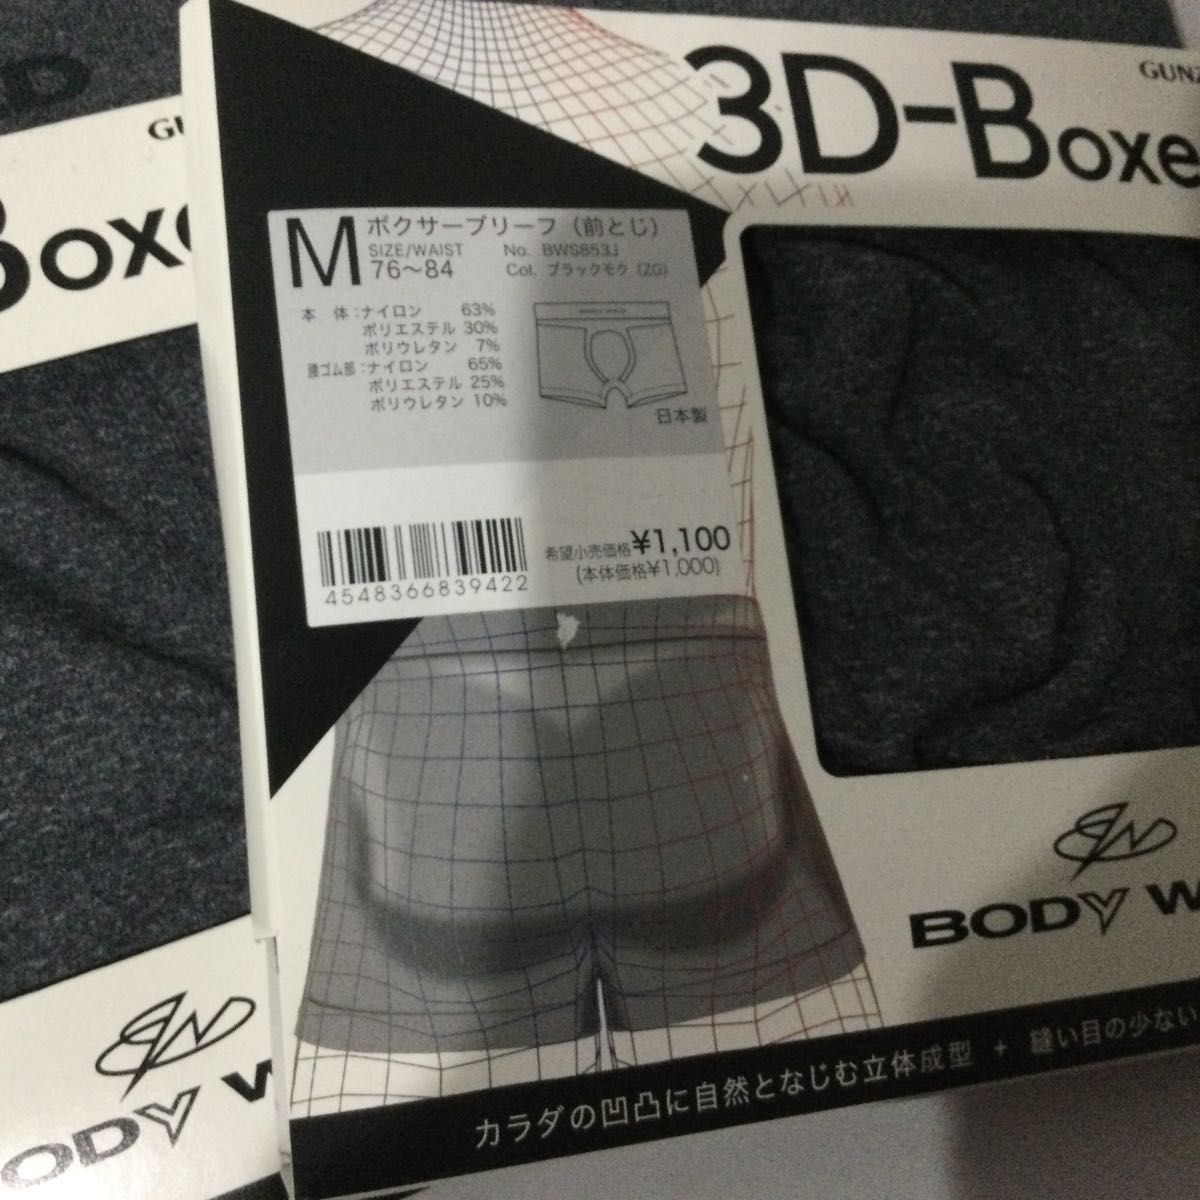 新品☆BODY WILD ボディワイルド ボクサーブリーフ 3D-Boxer 2つ ボクサーパンツ 3Dボクサー GUNZE